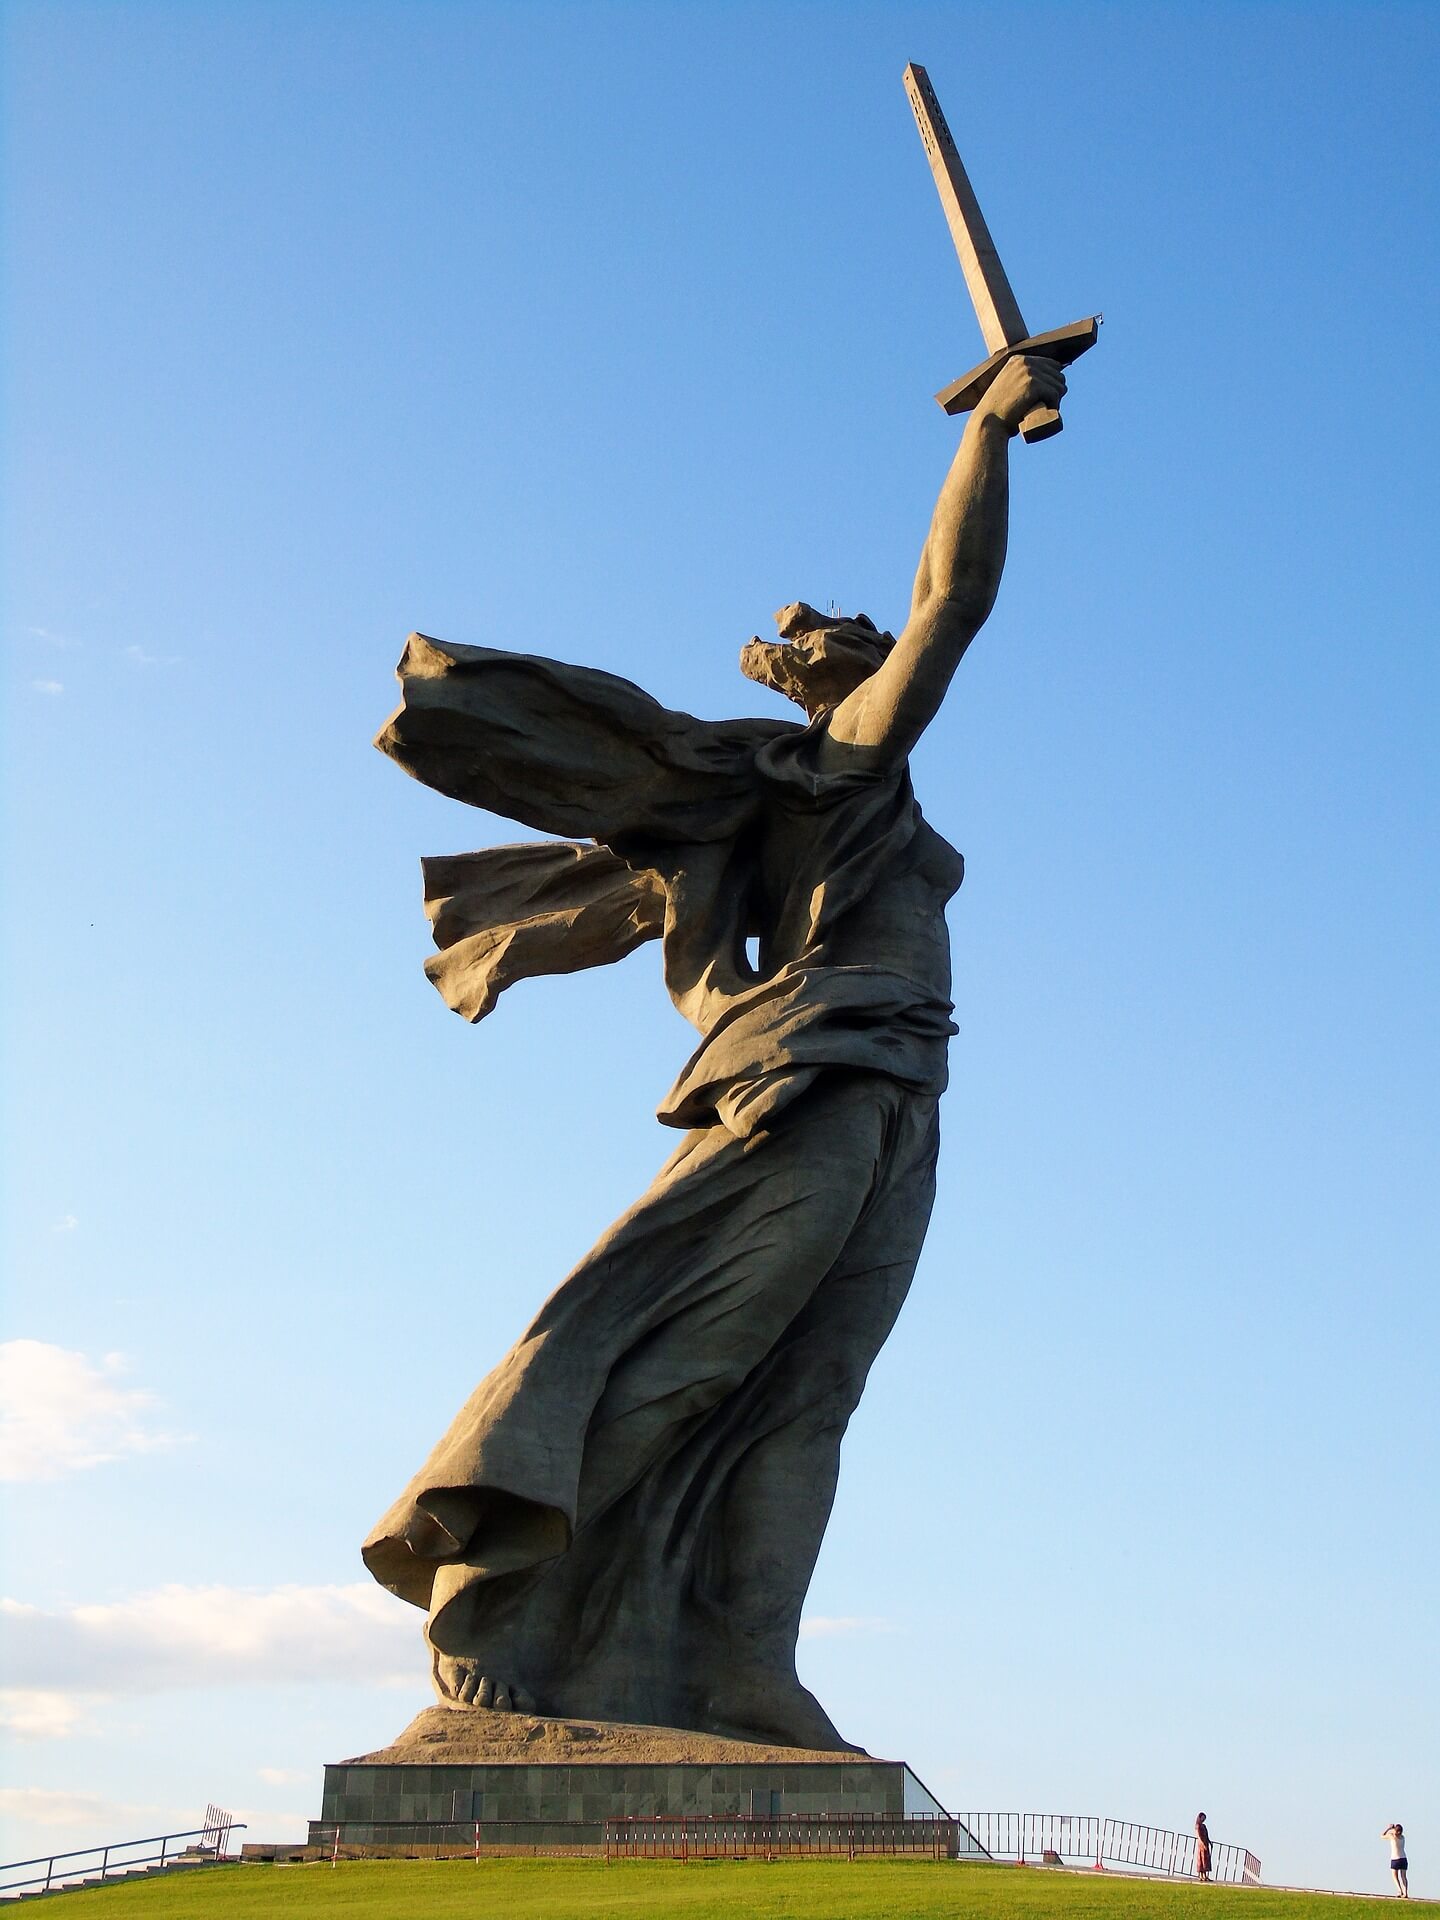 alt="volgograd statue"